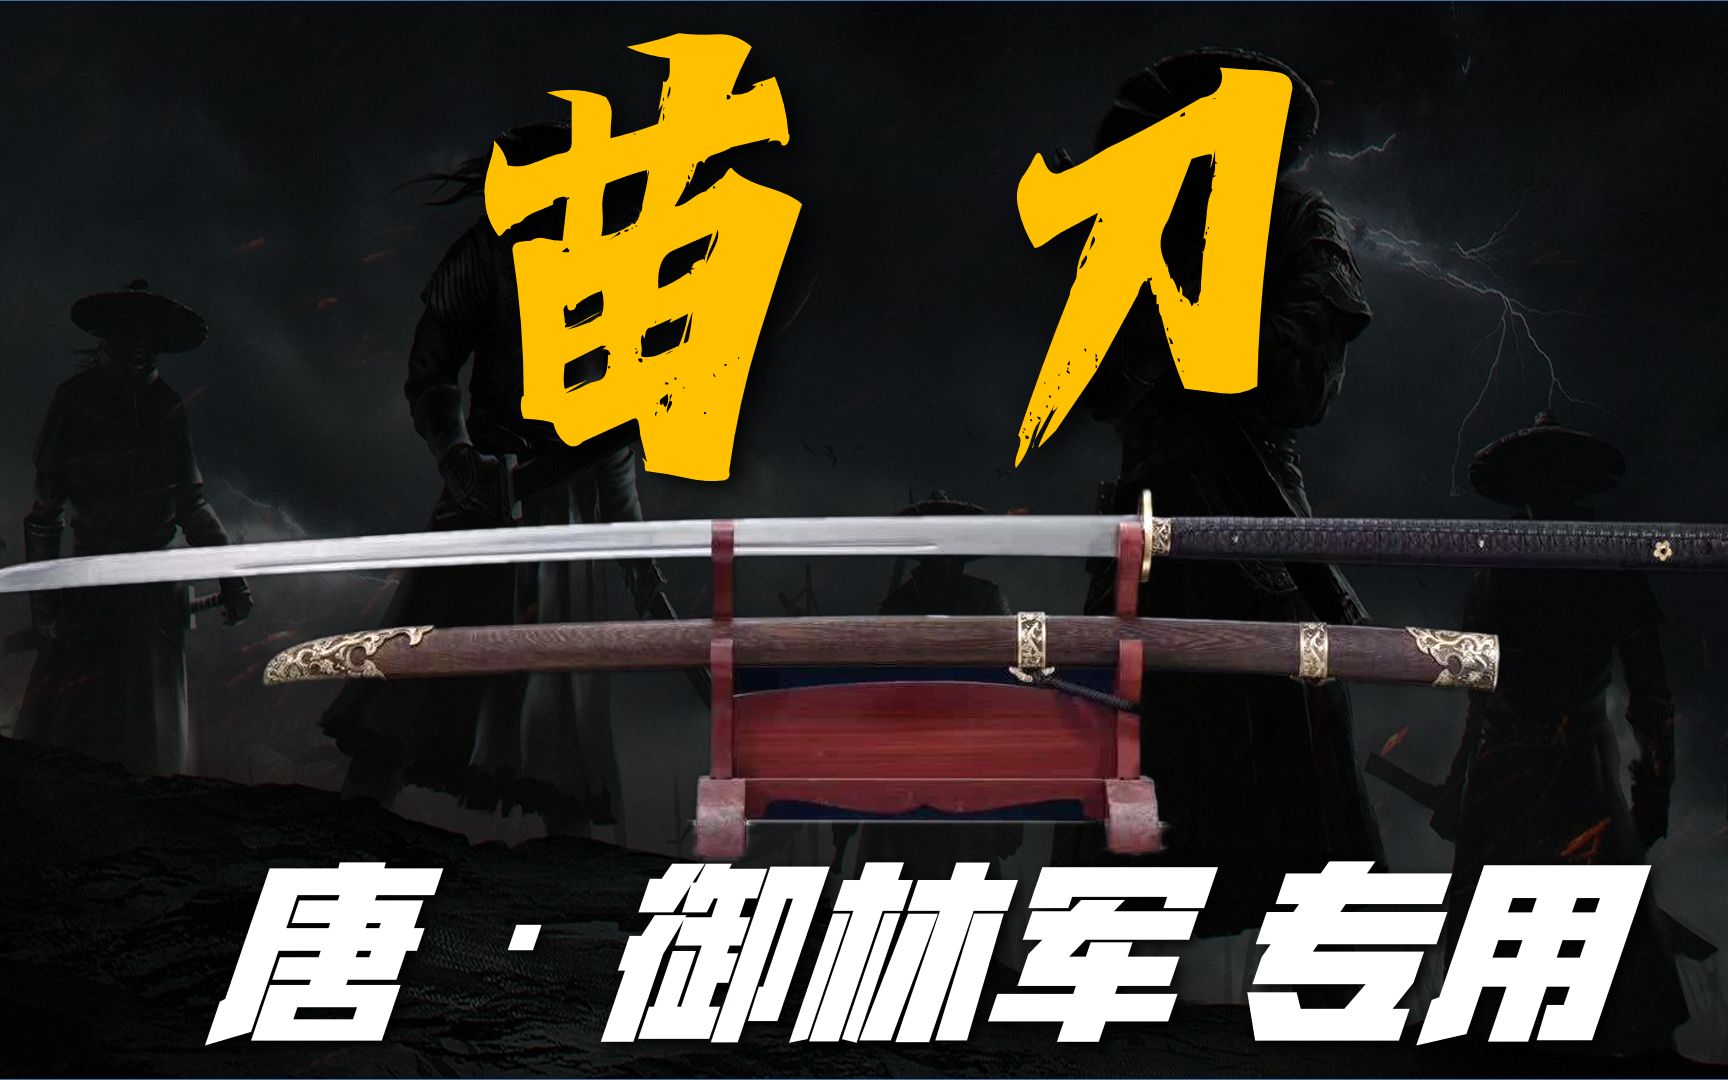 【苗刀】御林军专用宝刀 平定倭寇骚乱神器 曾一度被称为国刀